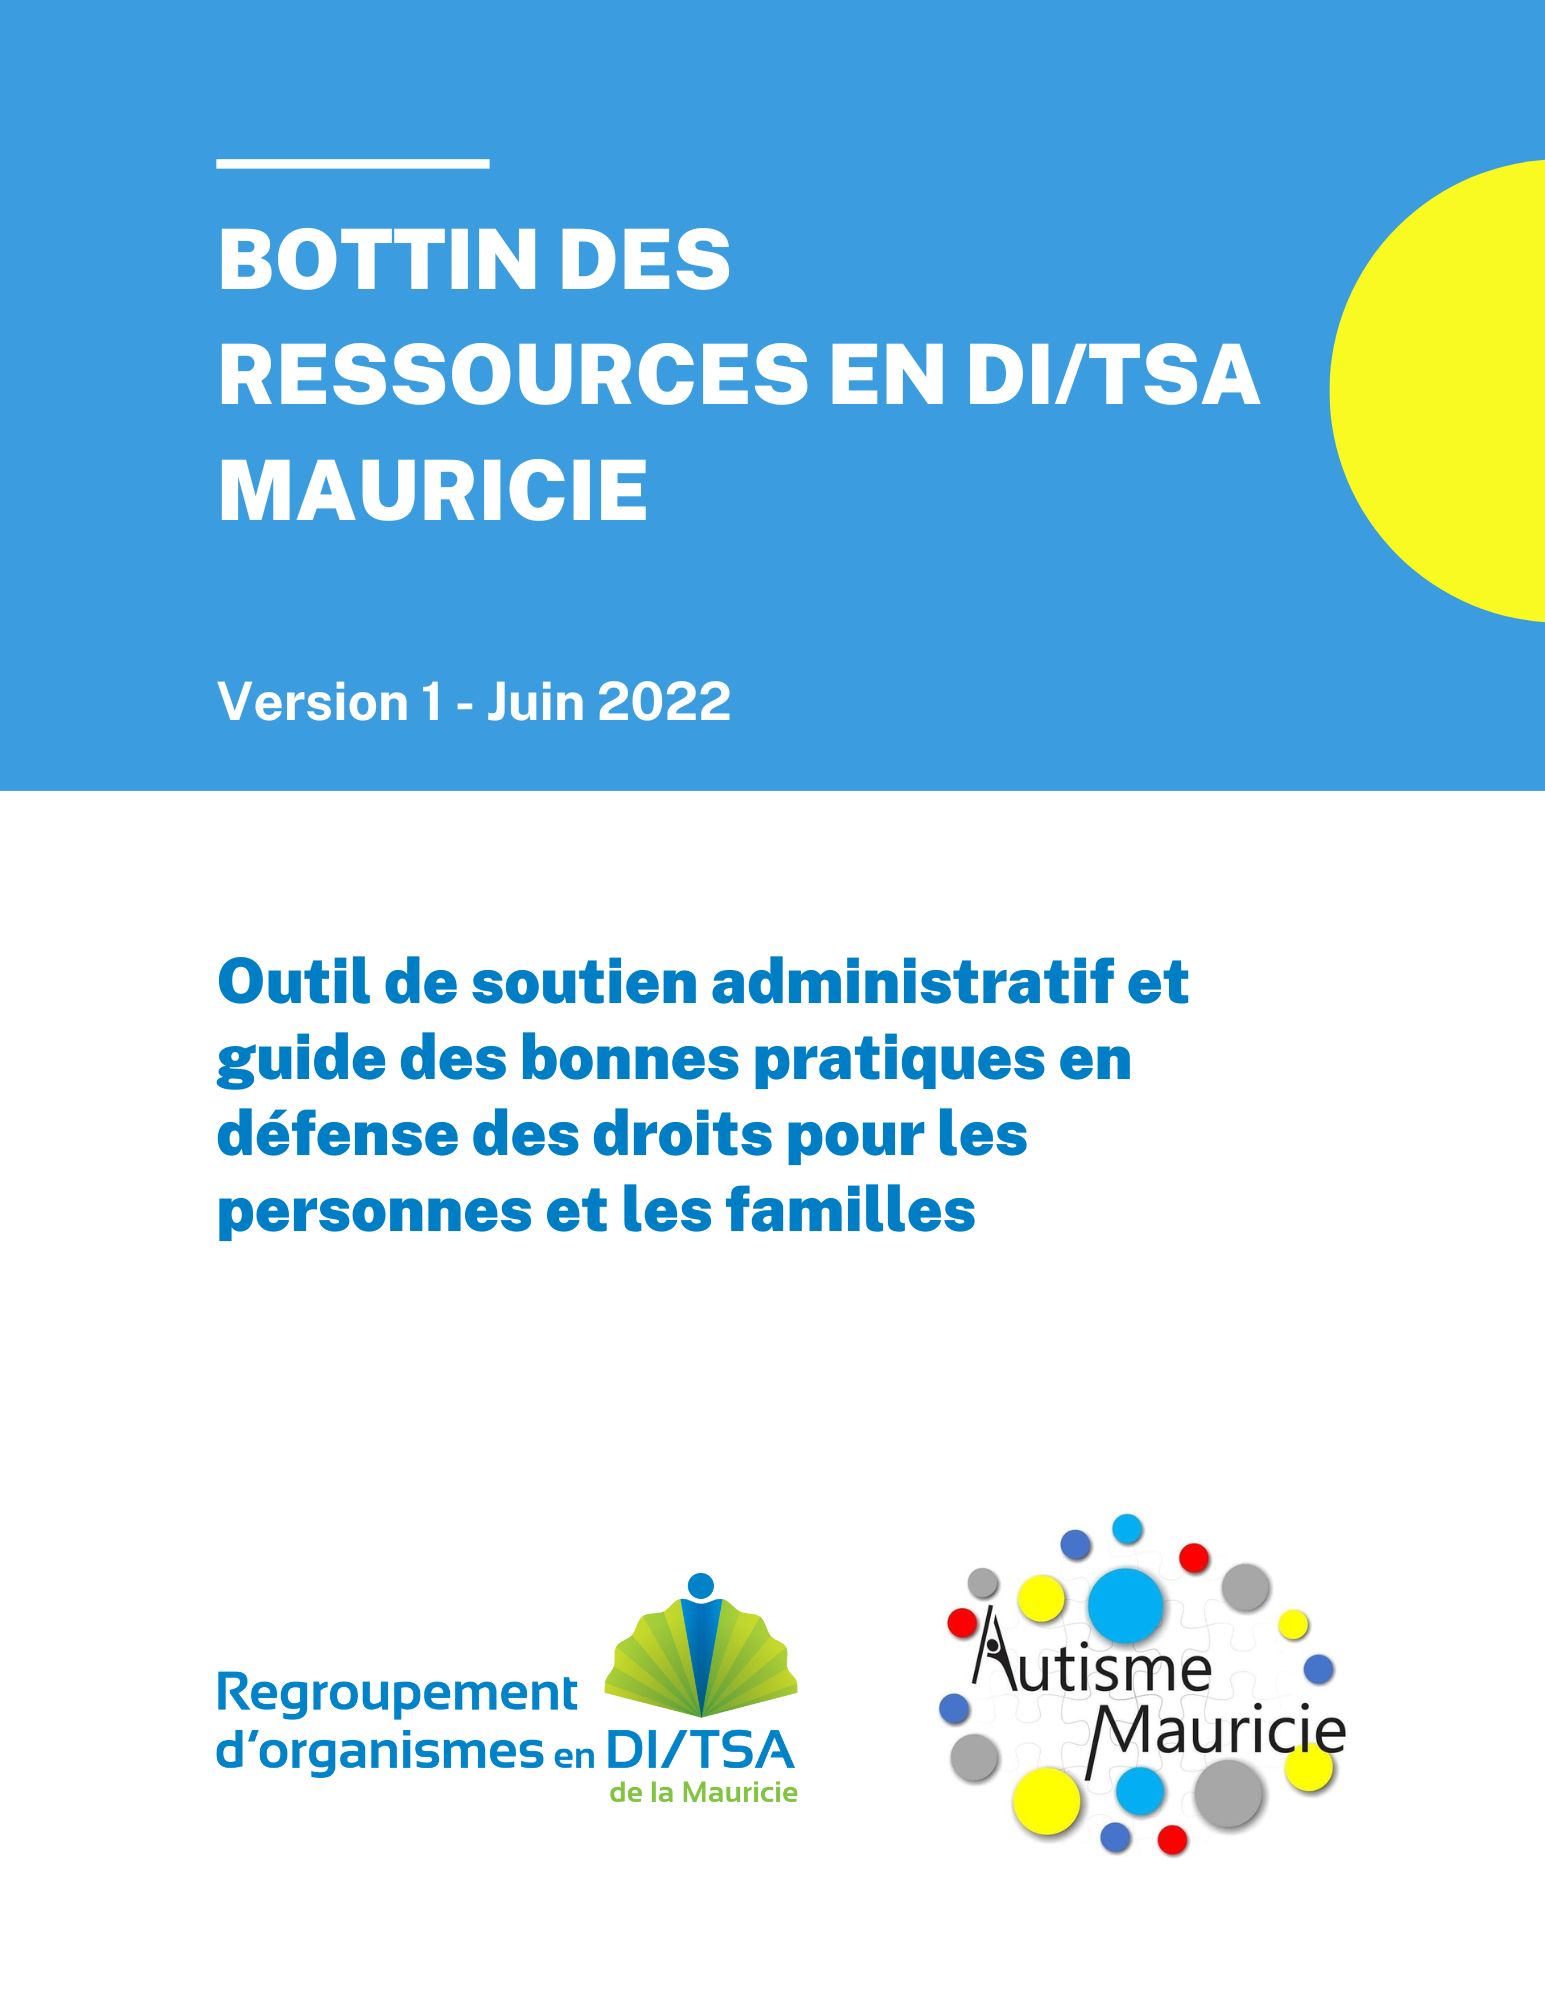 Bottin des ressources en DI/TSA Mauricie version 1 juin 2022